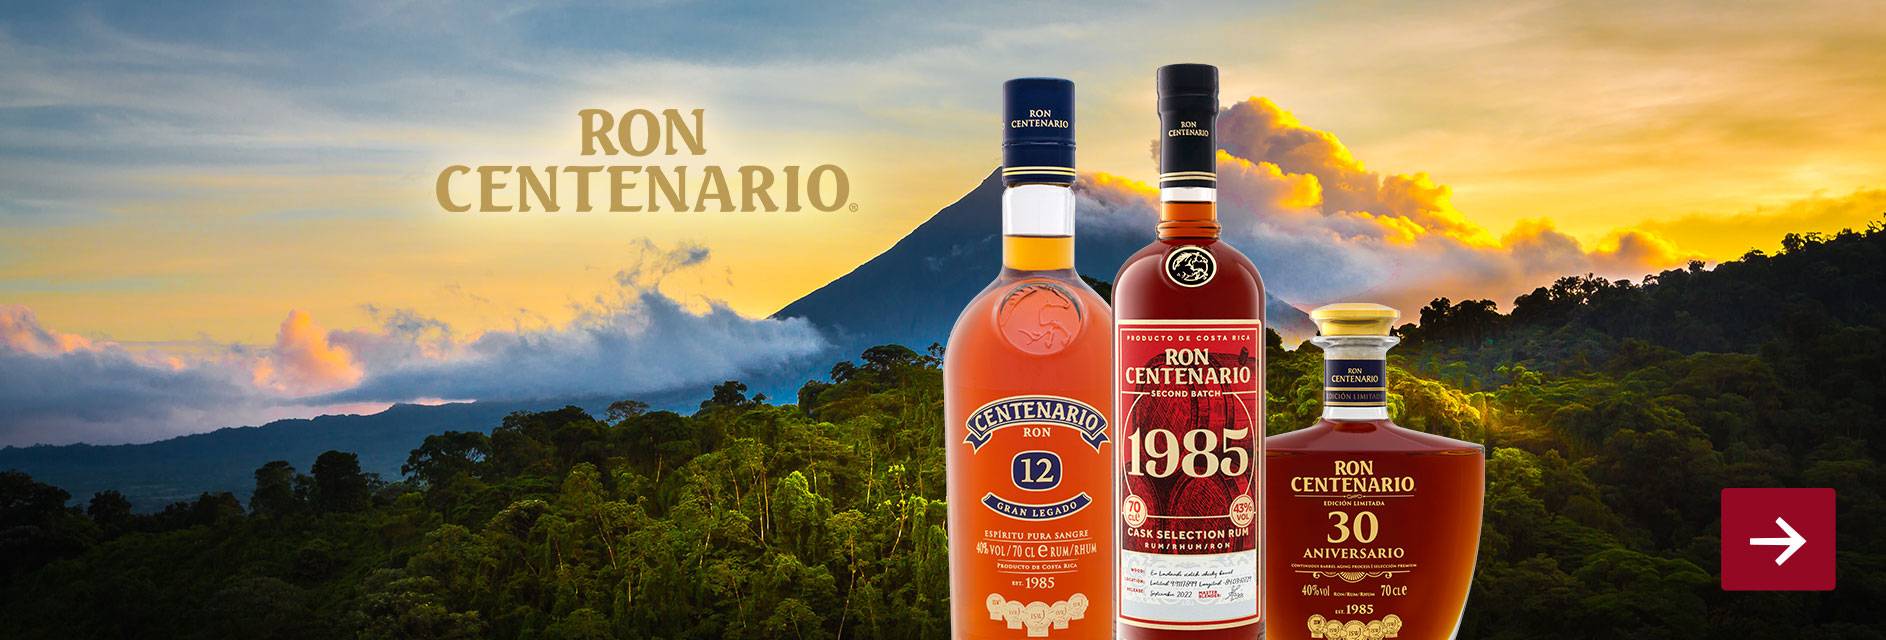 Ron Centenario Rum 1985 Second Batch 43% Vol | LIDL